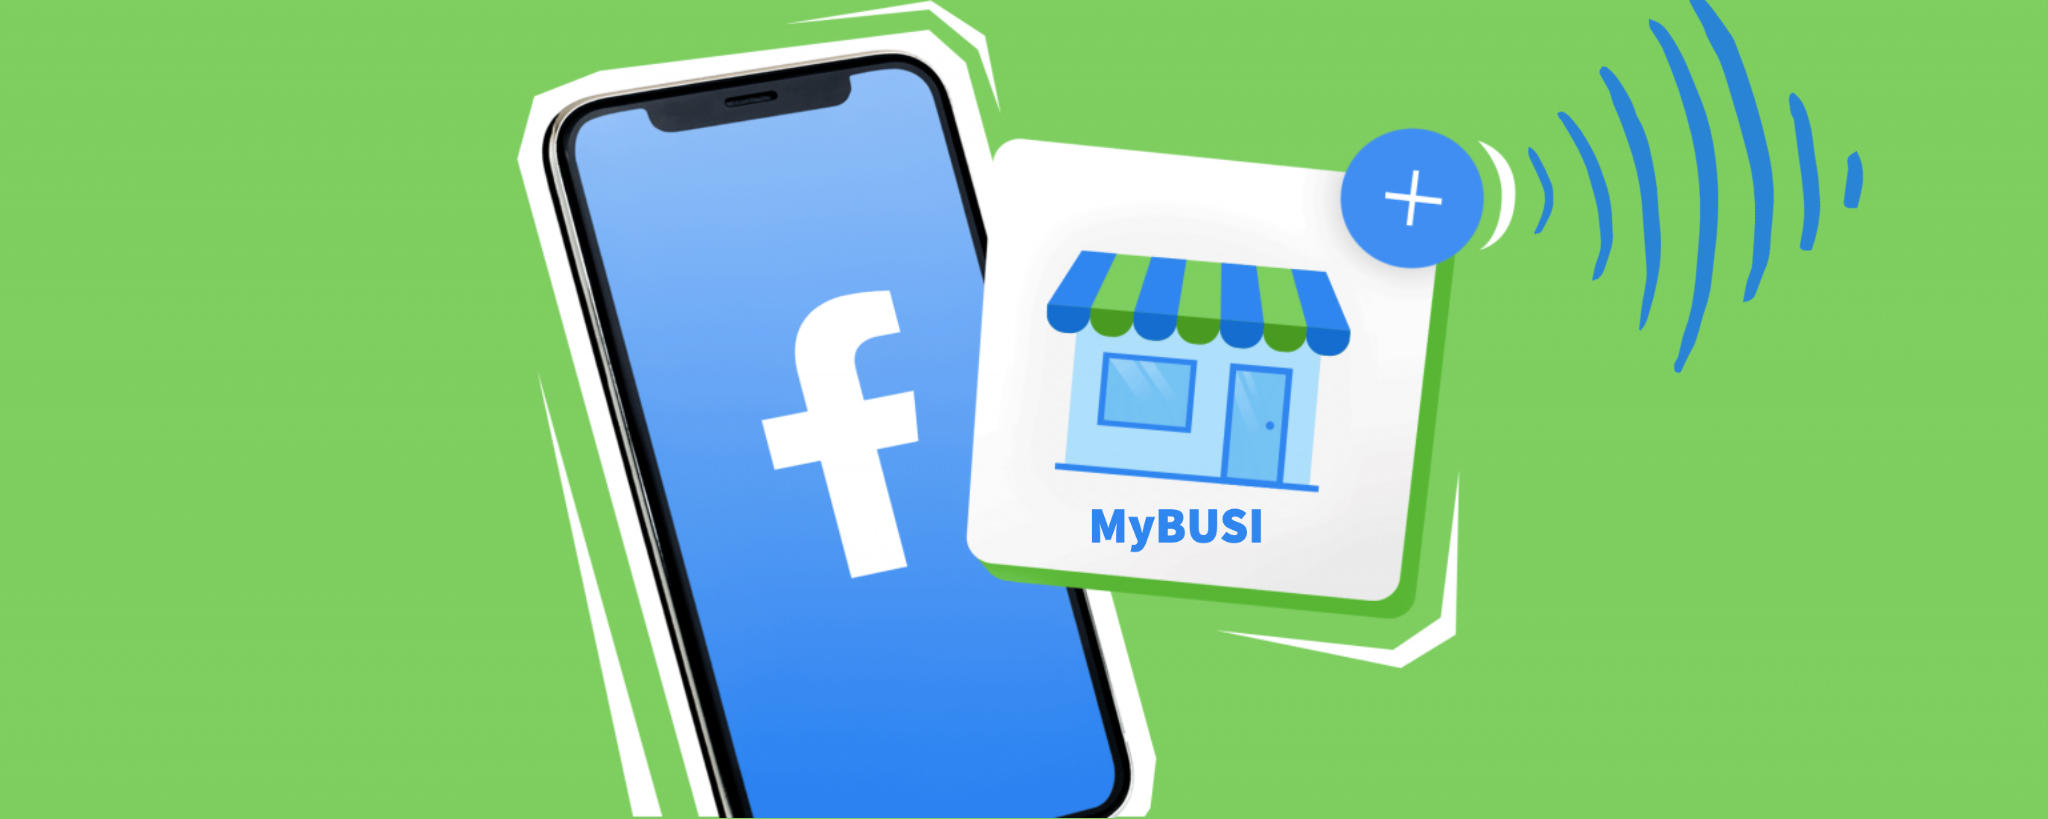 Connecter la boutique e-commerce à sa page Facebook